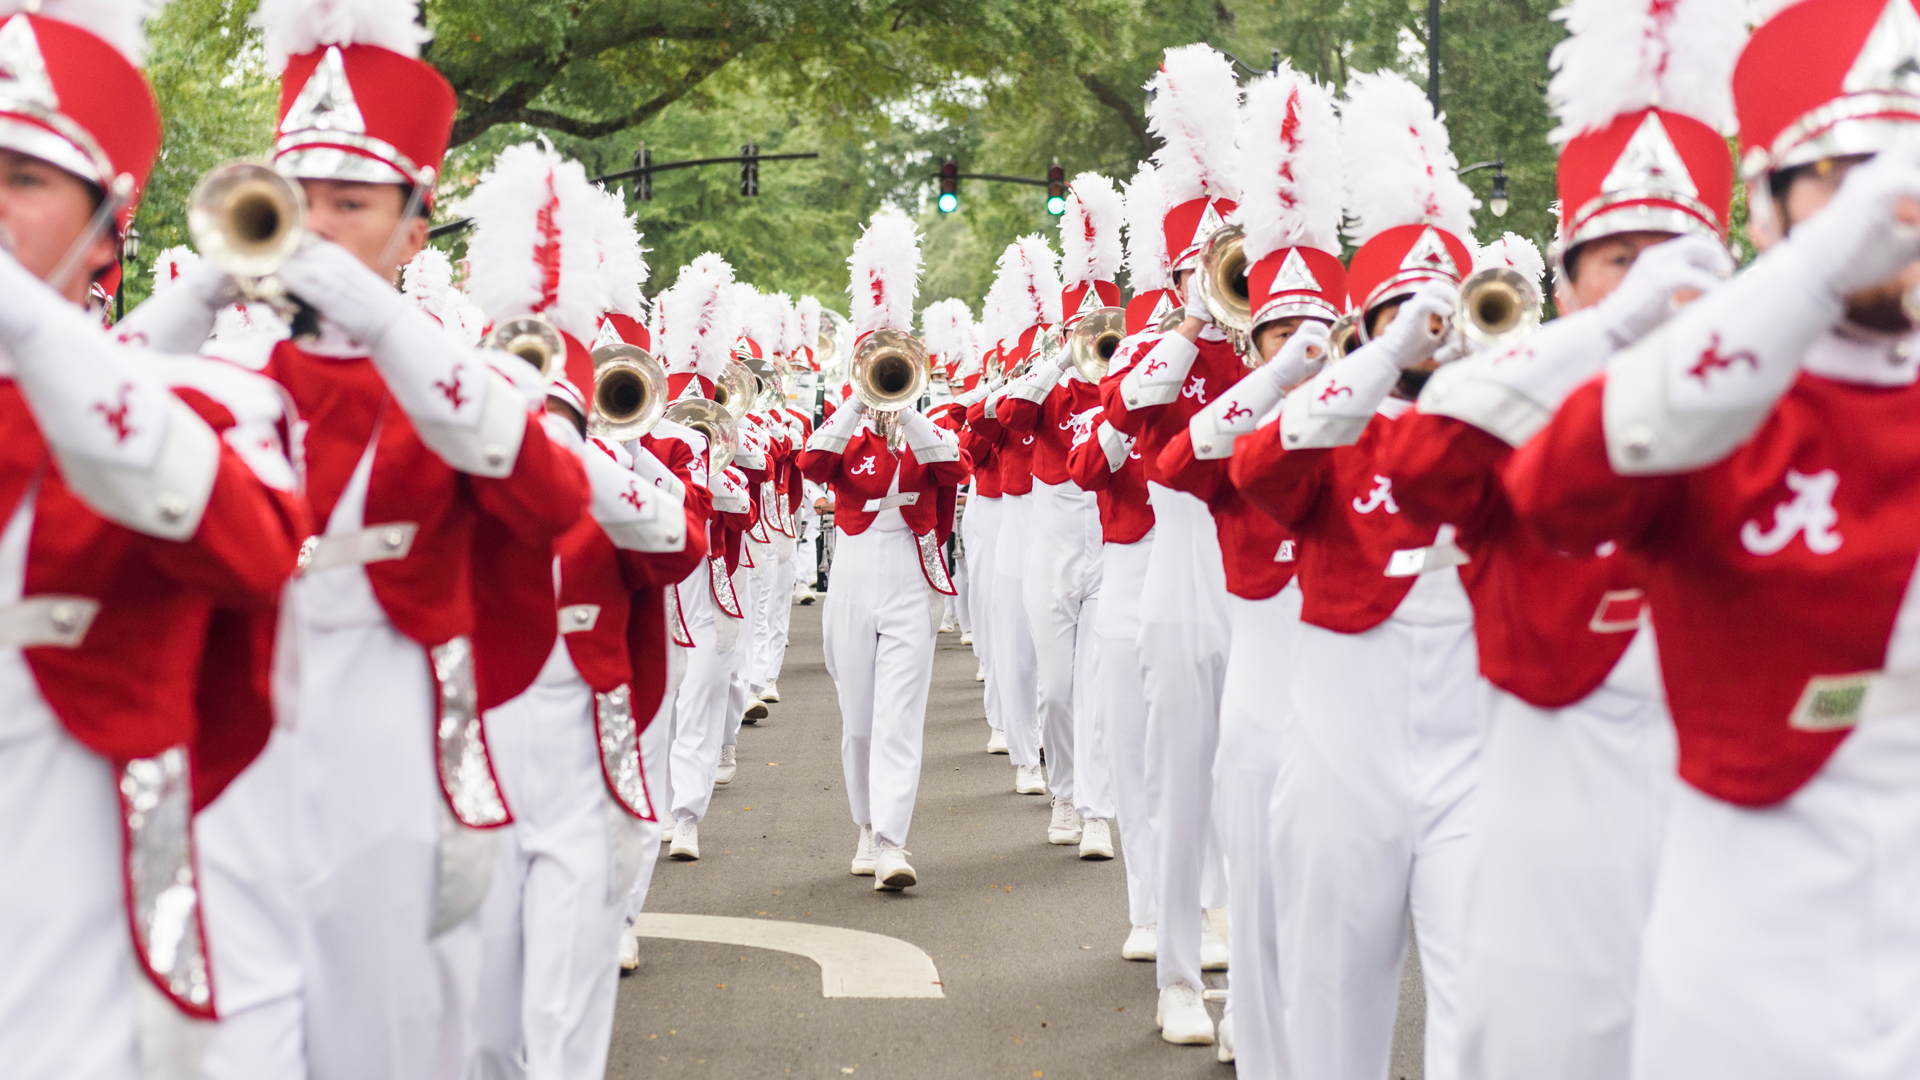 the Million Dollar Band at a homecoming parade